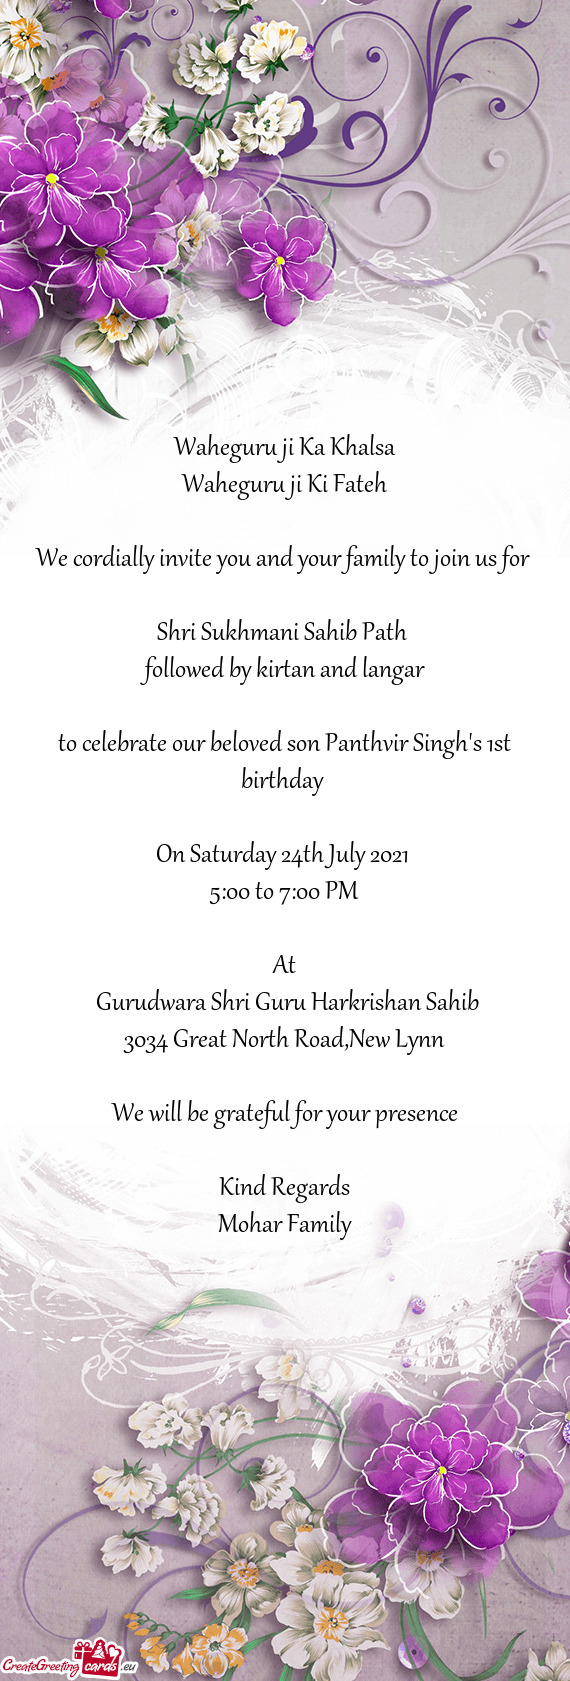 To celebrate our beloved son Panthvir Singh